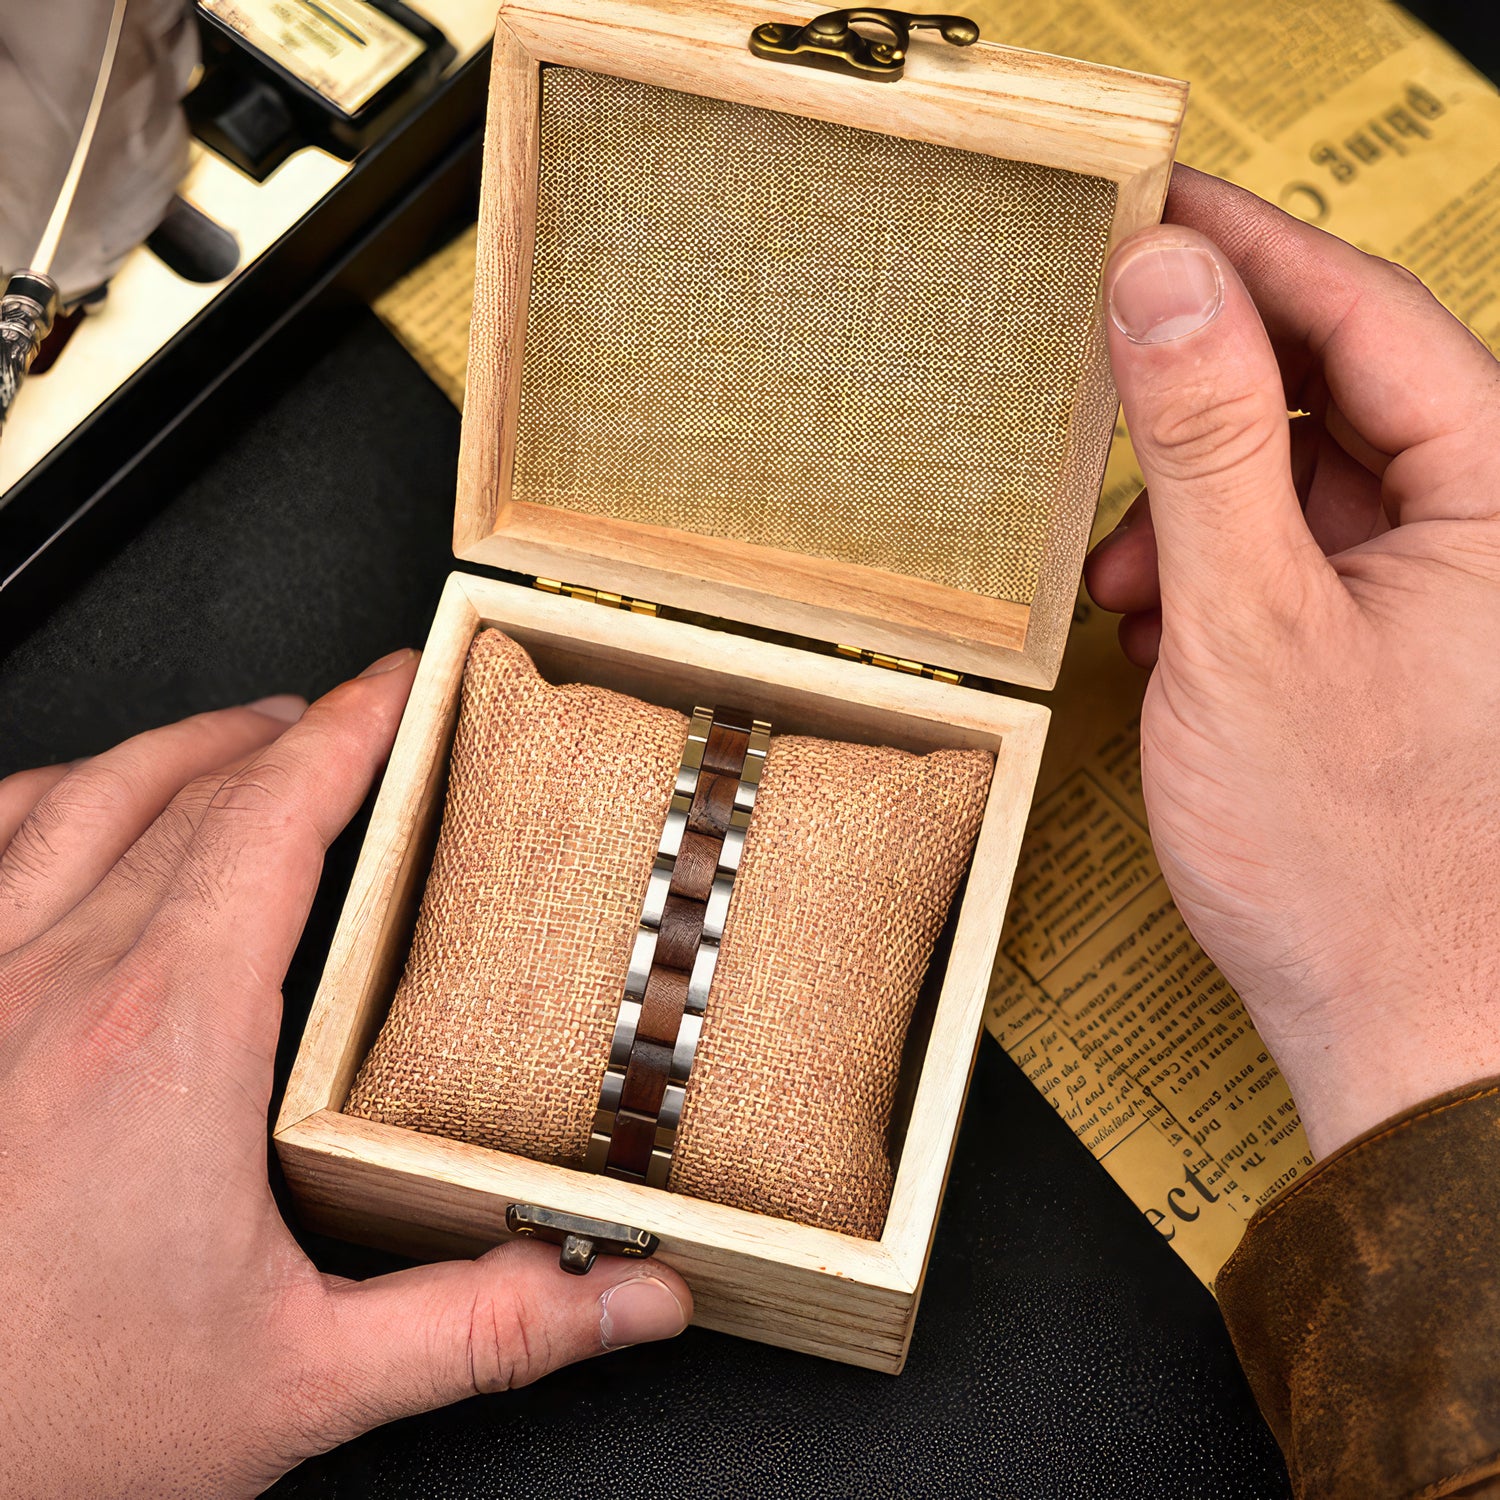 Steel & Wood Bracelet In A Gift Box